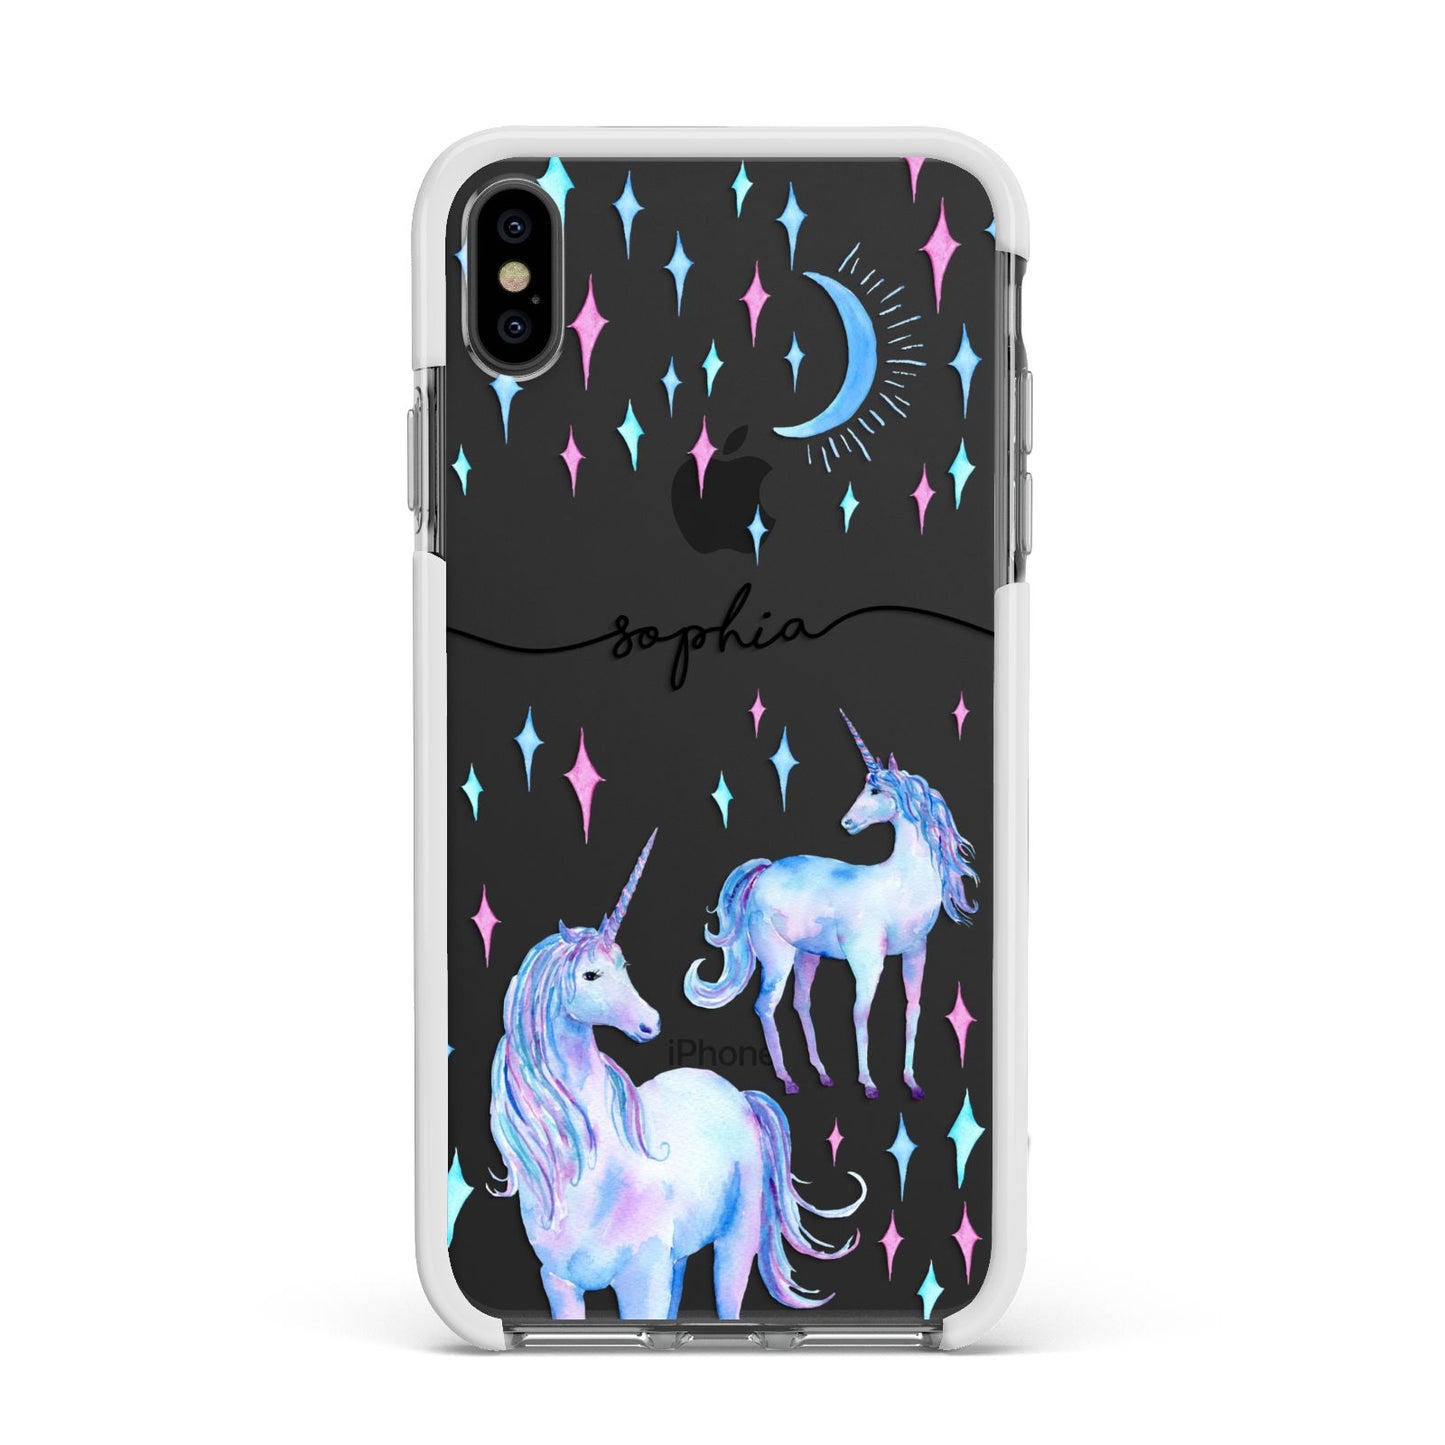 Personalised Unicorns Apple iPhone Xs Max Impact Case White Edge on Black Phone